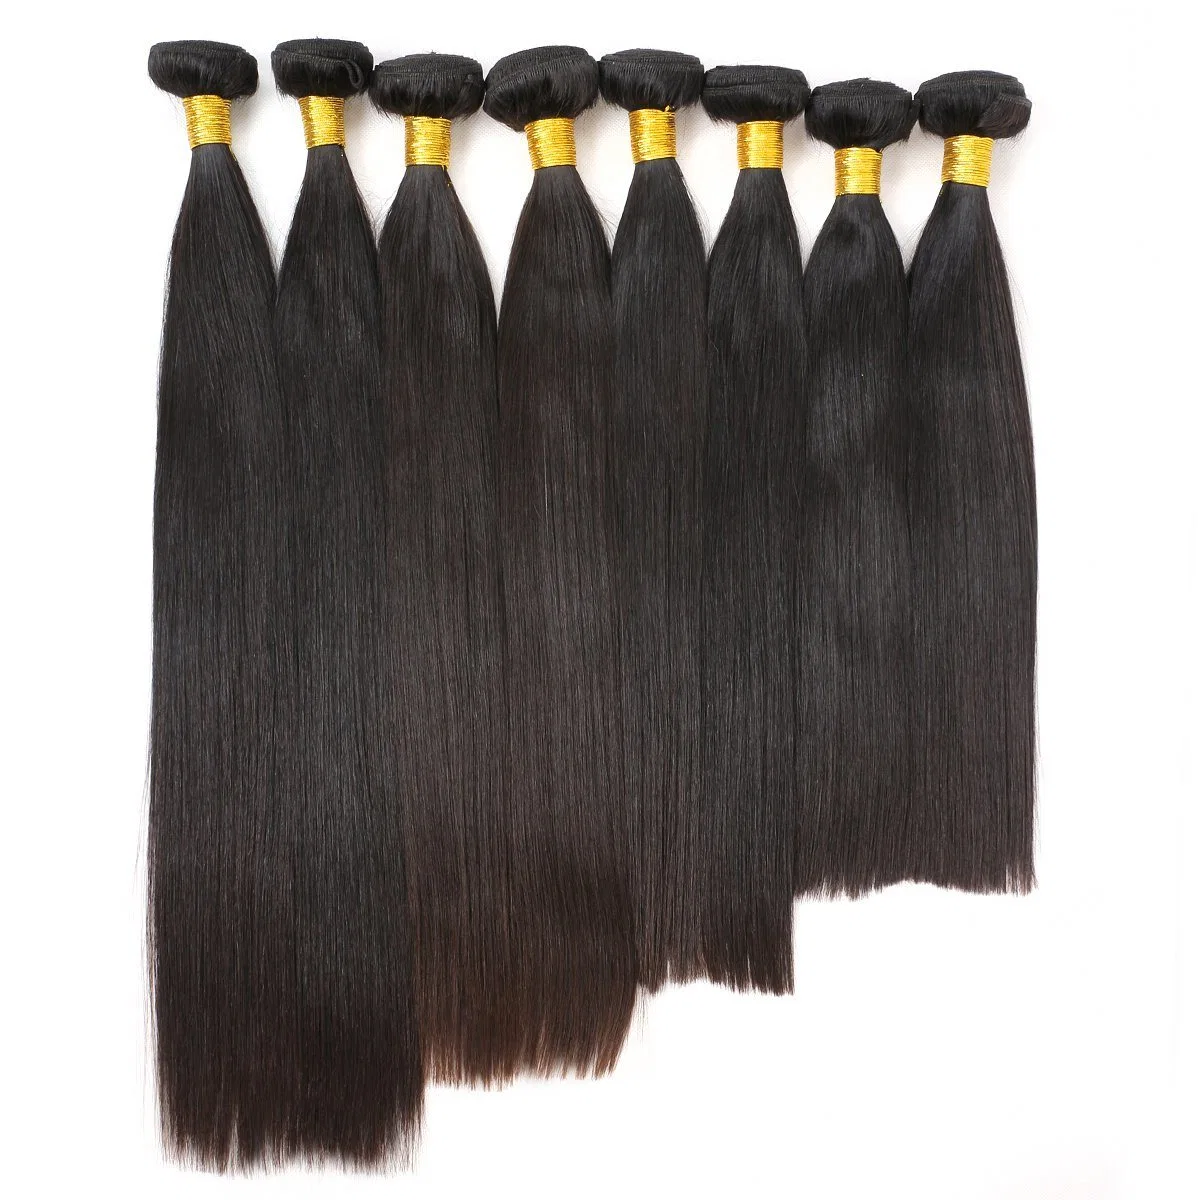 Schönheit on Line gerade brasilianische malaysische Haar natürliche schwarze Farbe 100% Menschliches Haar Weave Bundles Remy Haar 8-28 Zoll